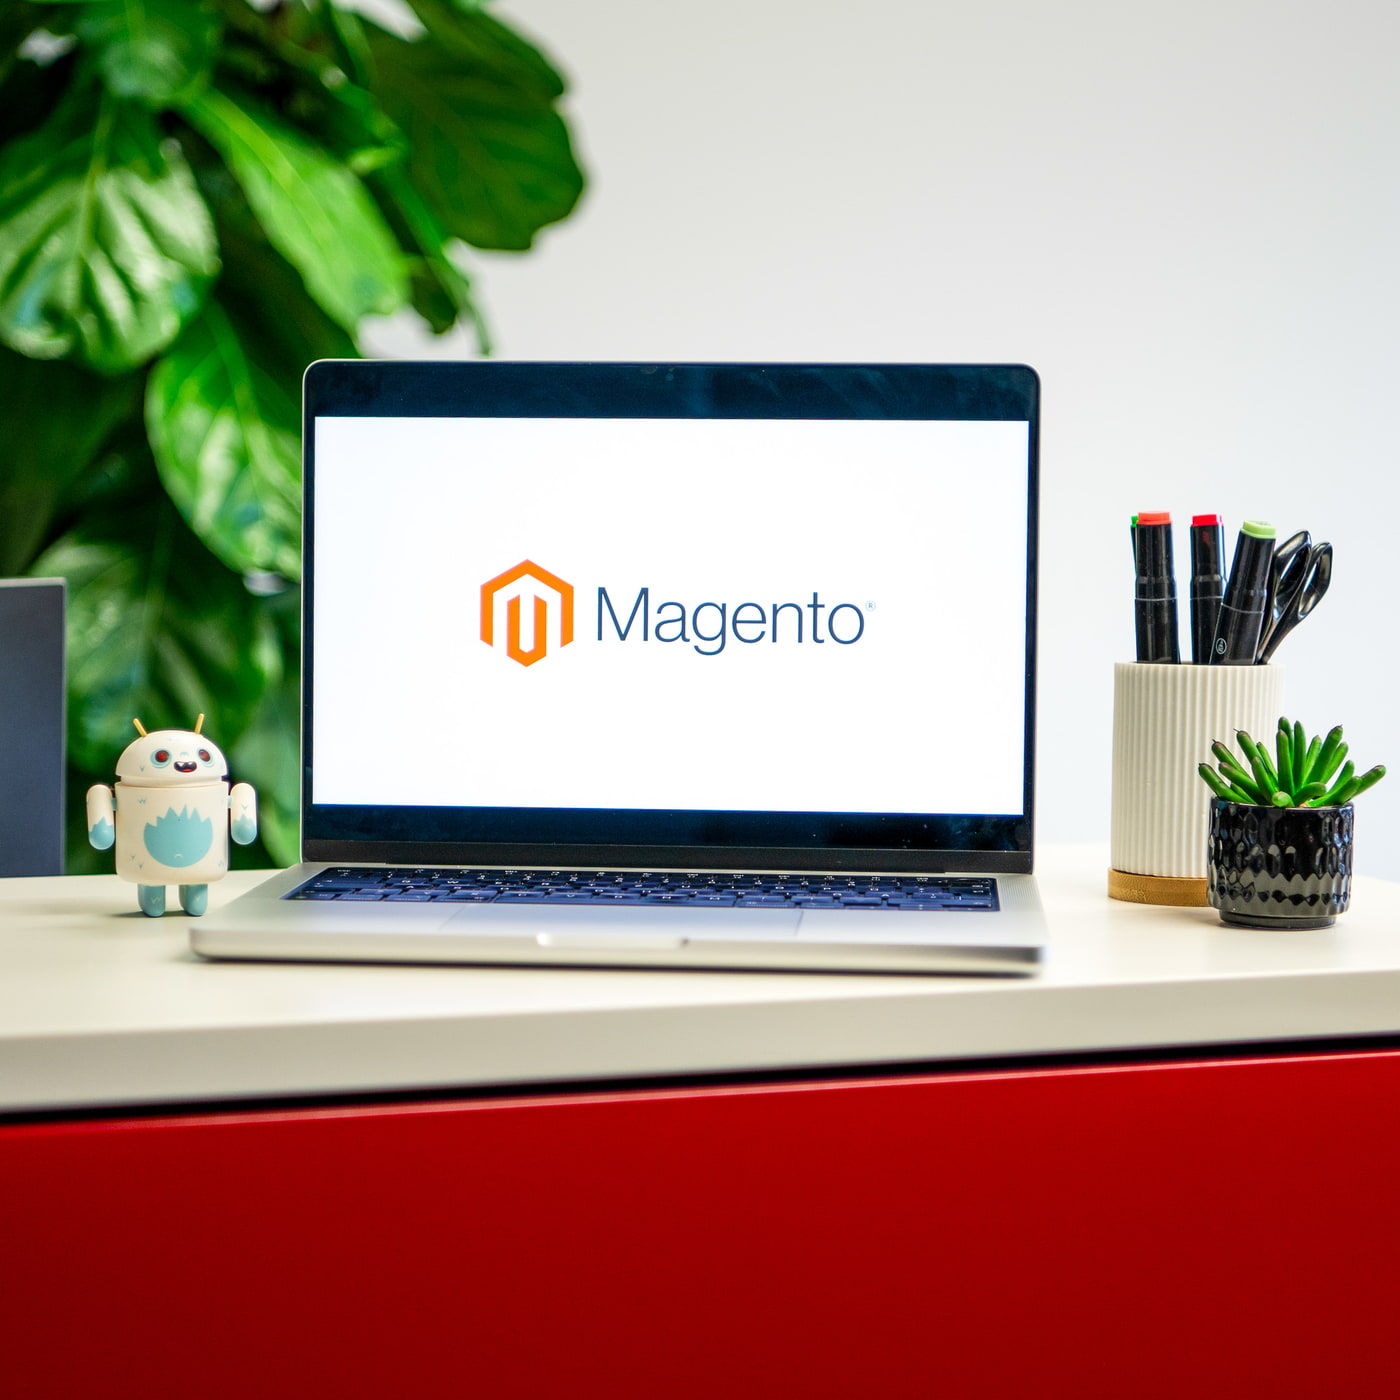 Laptop mit Magento-Logo, Stifte, Pflanze